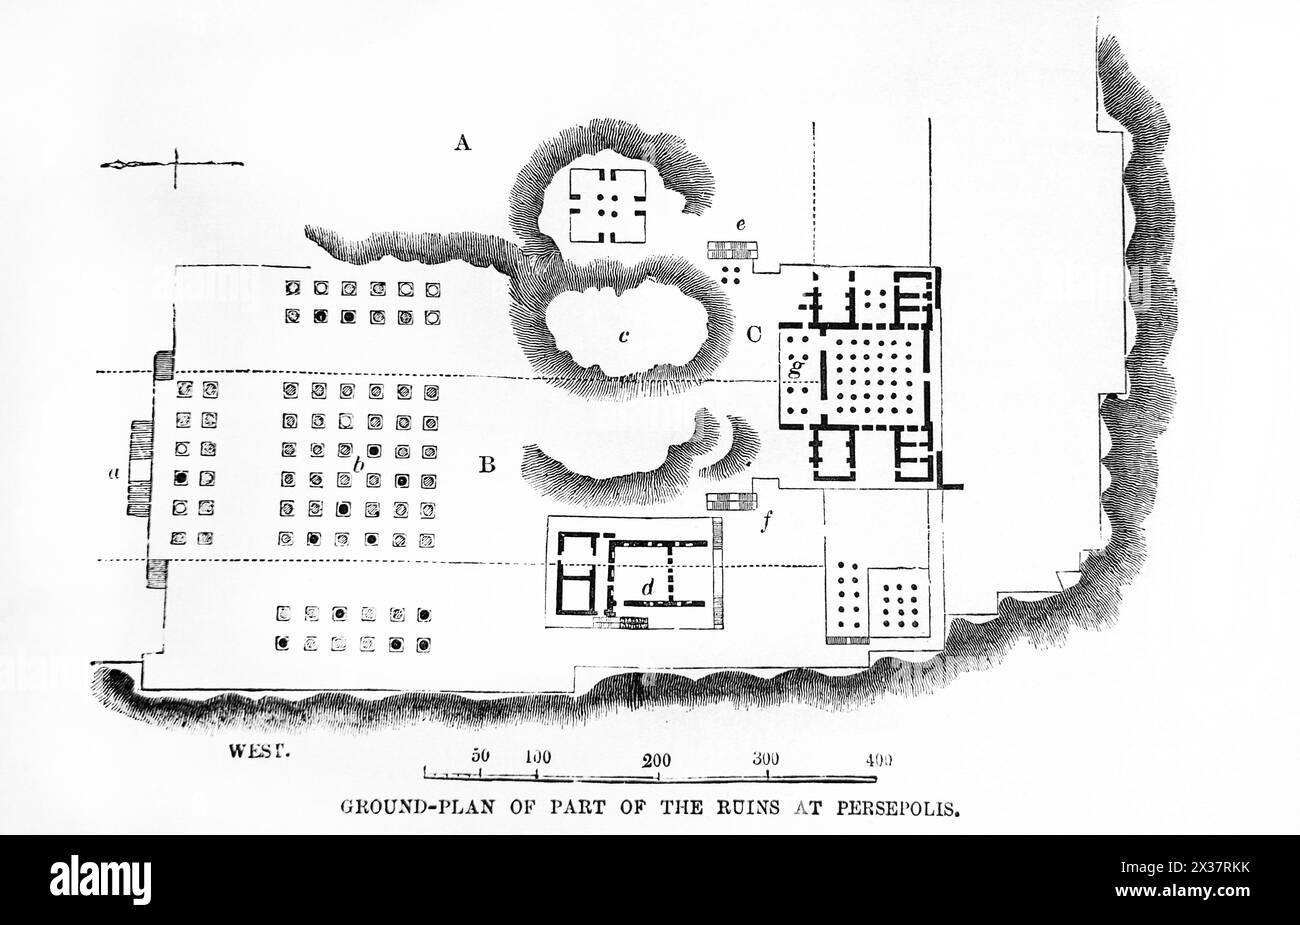 Plan de terrain d'une partie des ruines de Persépolis Iran dans la Bible de la famille illustrée du XIXe siècle Banque D'Images